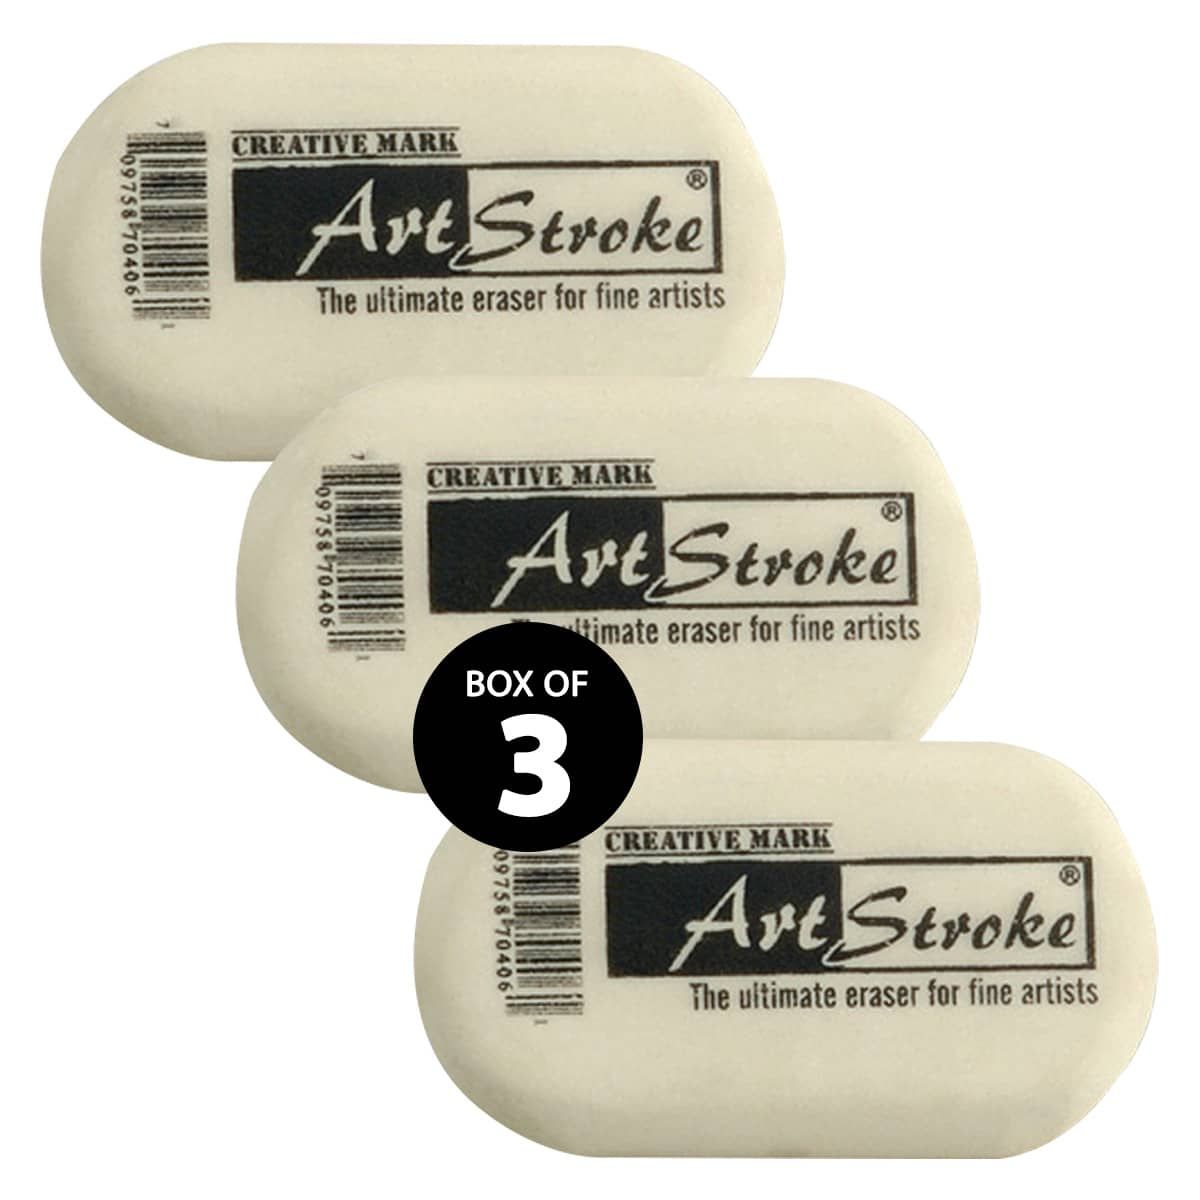 Art Stroke® - Smudge free erasing with minimal crumbling